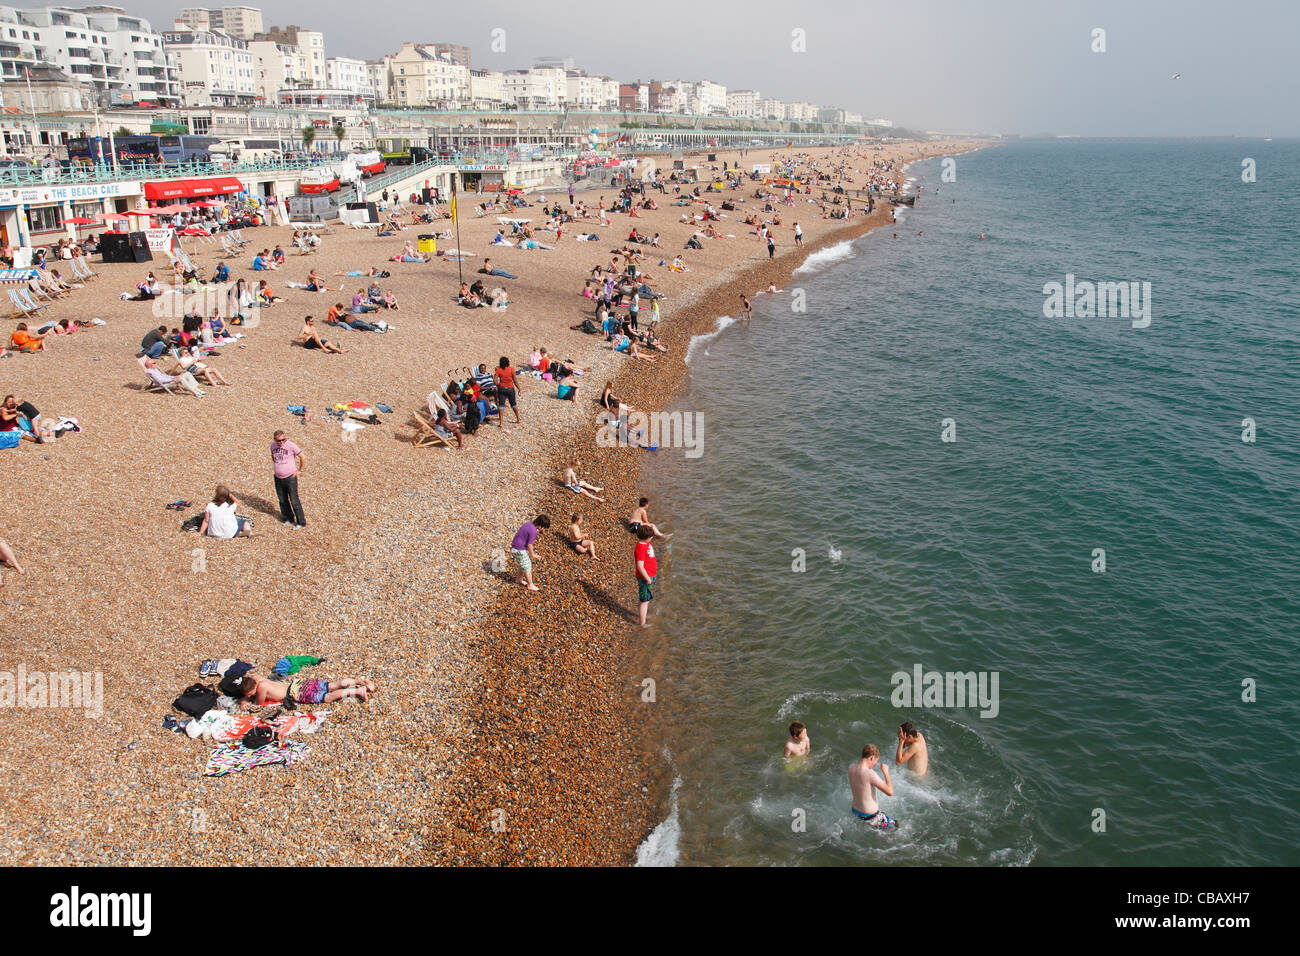 Strand von Brighton, Brighton, West Sussex, England, Großbritannien Stockfoto